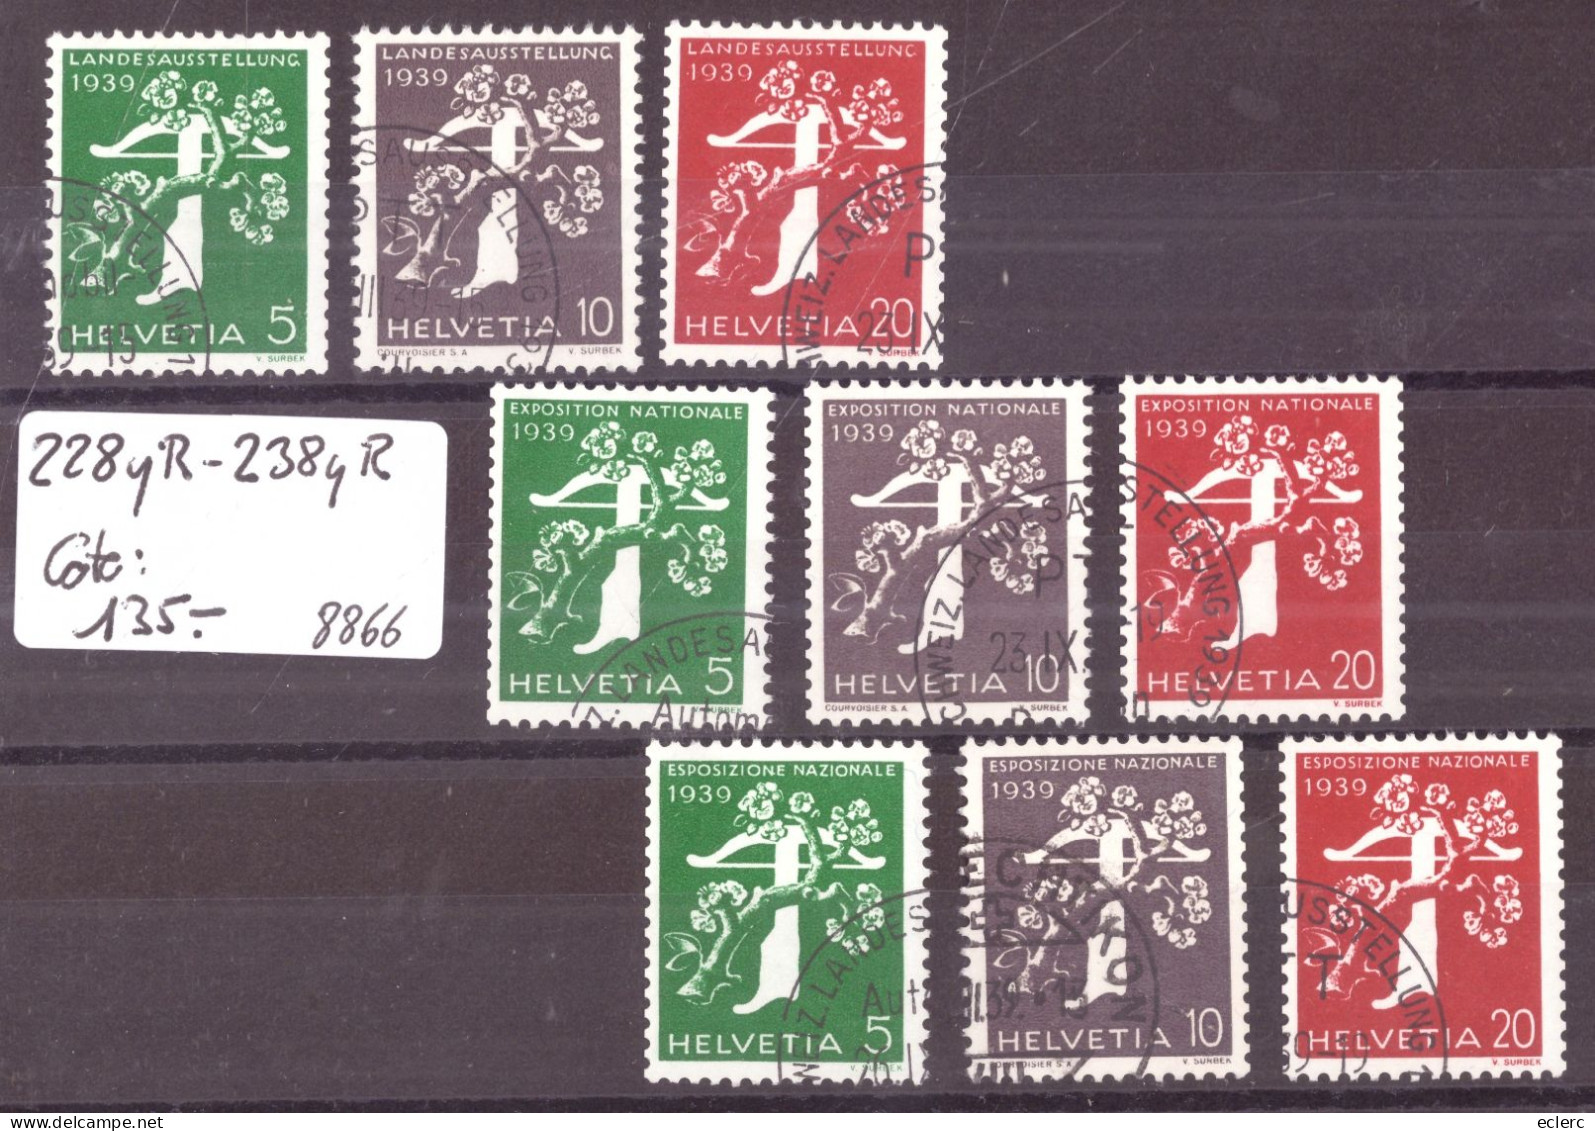 EXPOSITION ZÜRICH 1939 - TIMBRES DE ROULEAUX - No 228yR - 238yR  OBLITERES ( PAPIER LISSE ) - COTE: 135.- - Francobolli In Bobina